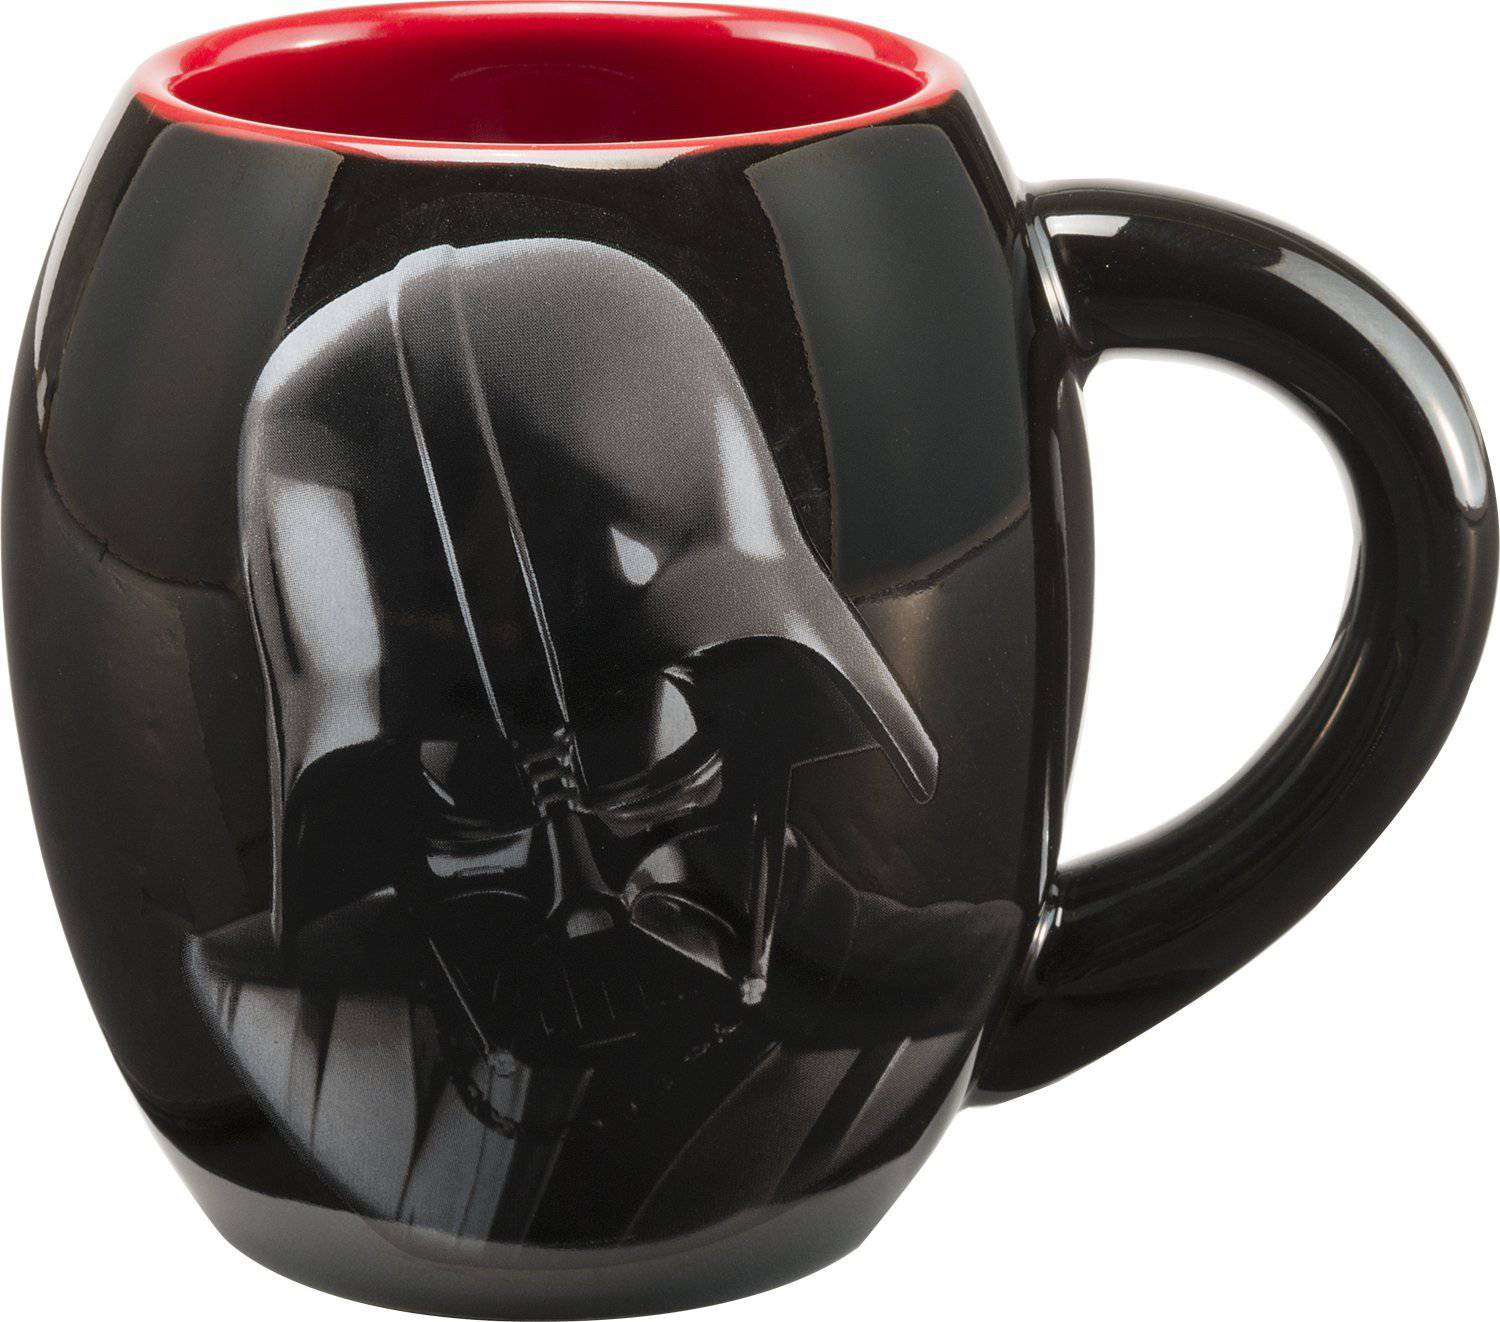 Vandor Star Wars Darth Vader Ceramic Mug, Black